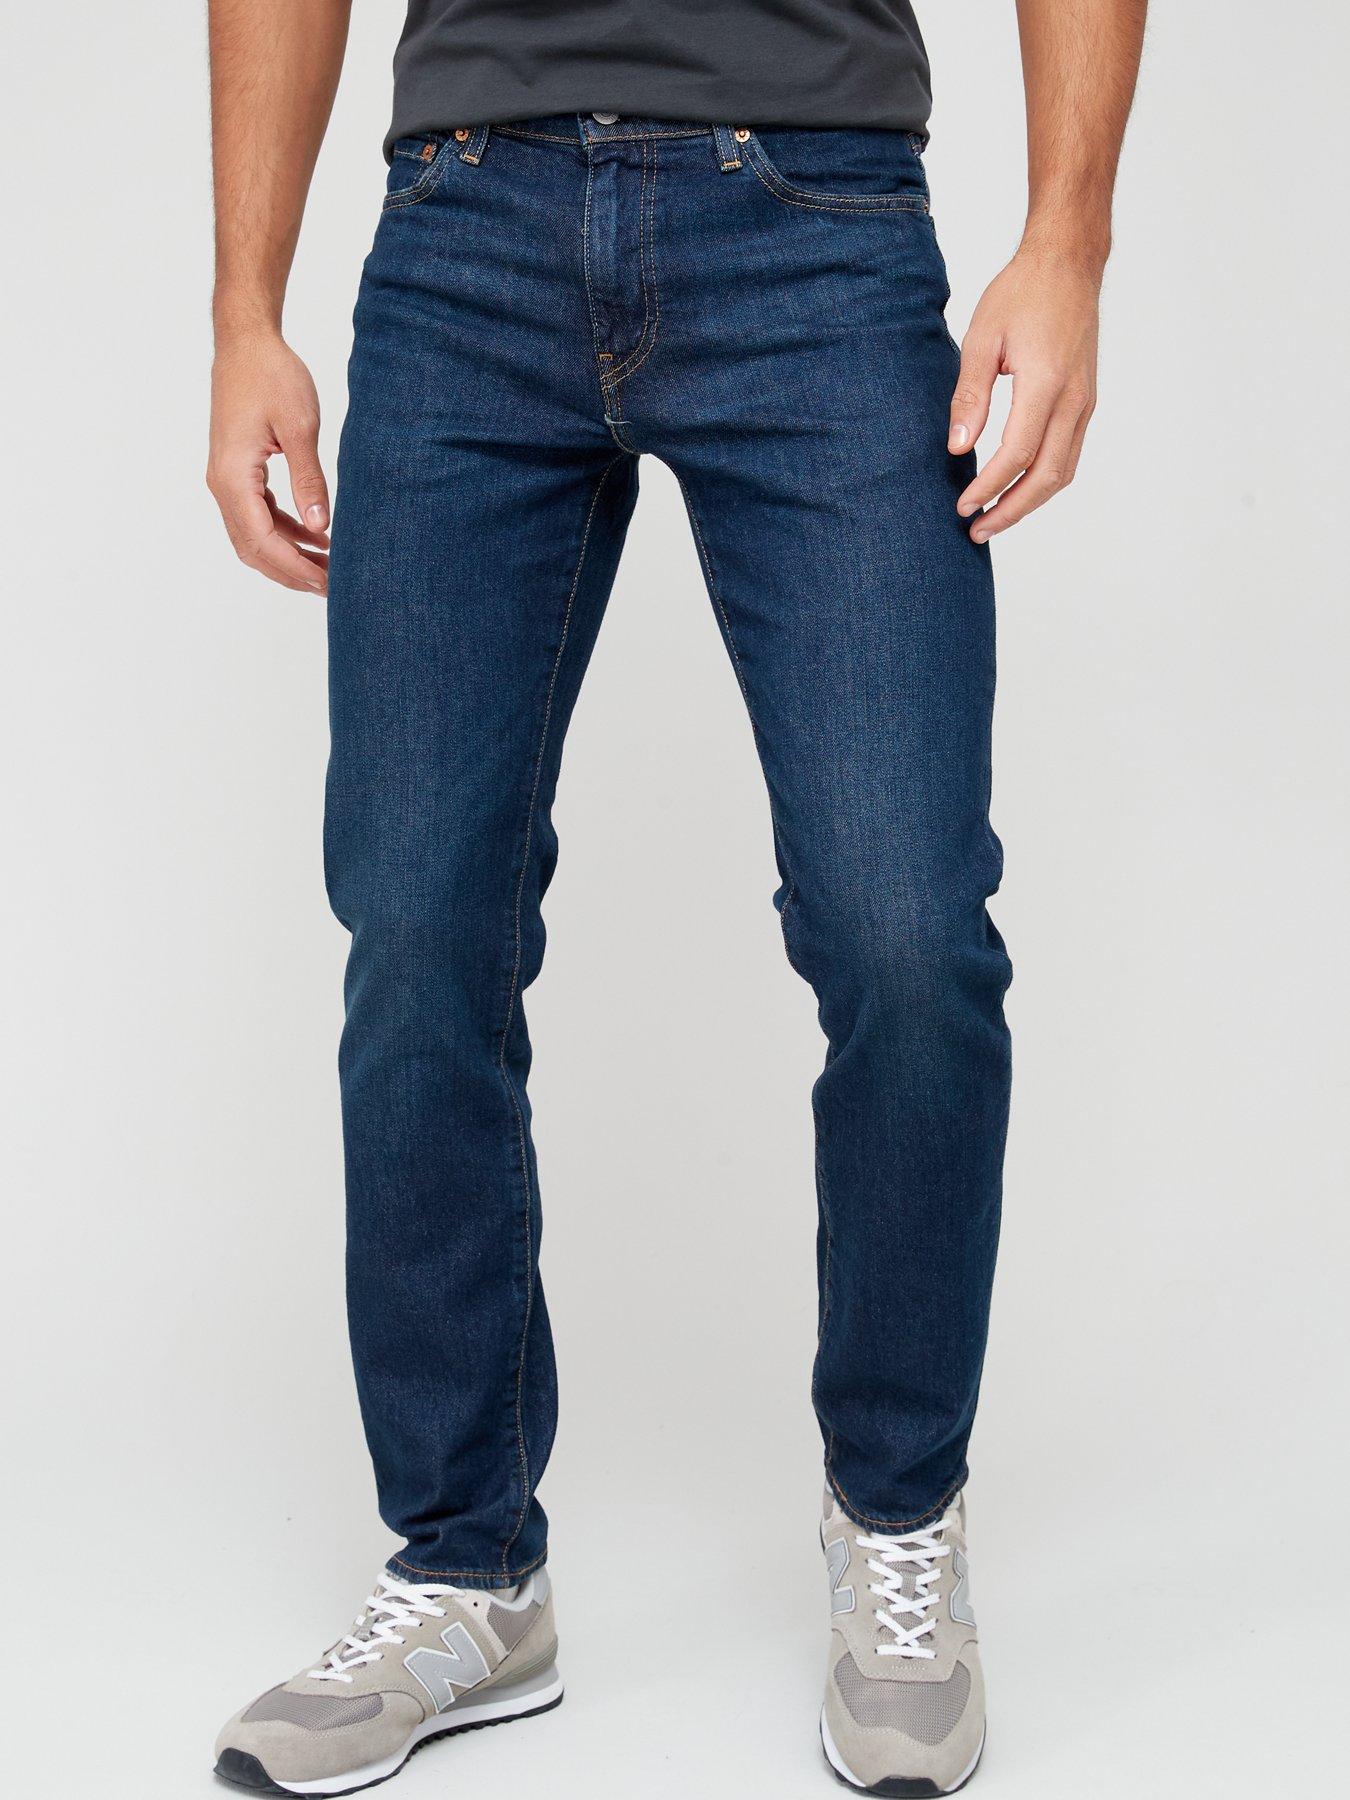 Slim Fit Jeans | Levi's | Jeans | Men 